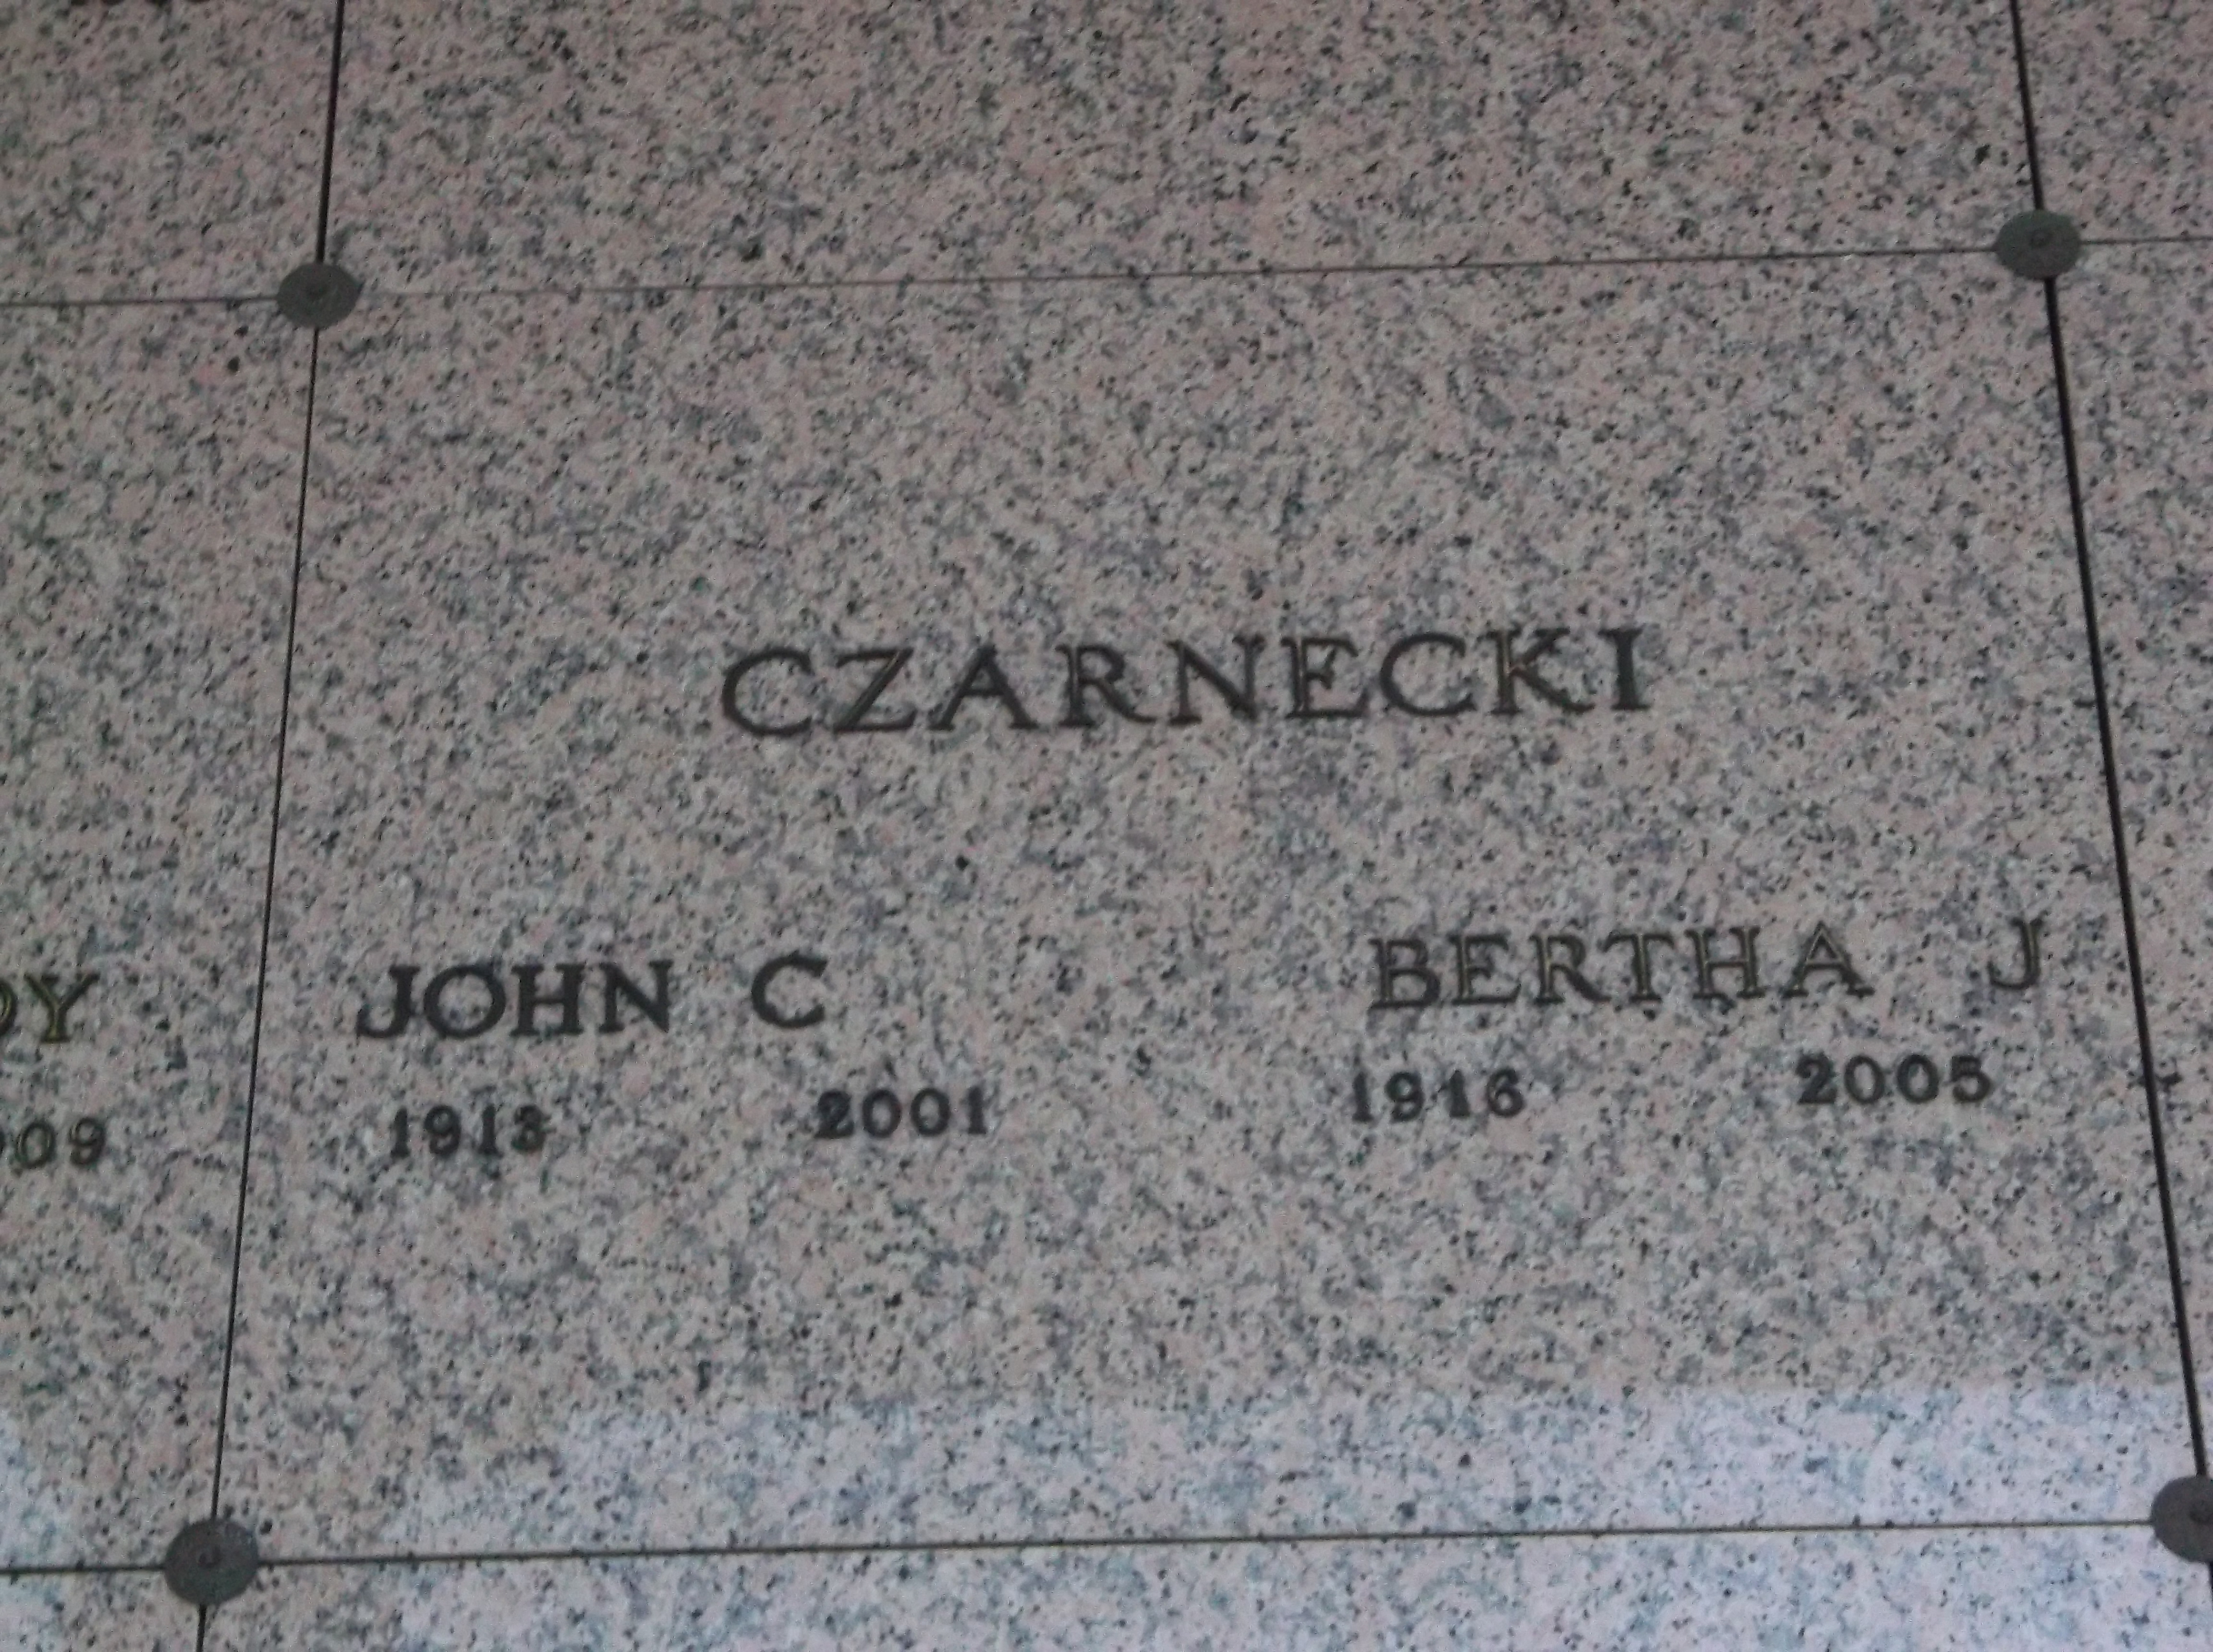 John C Czarnecki